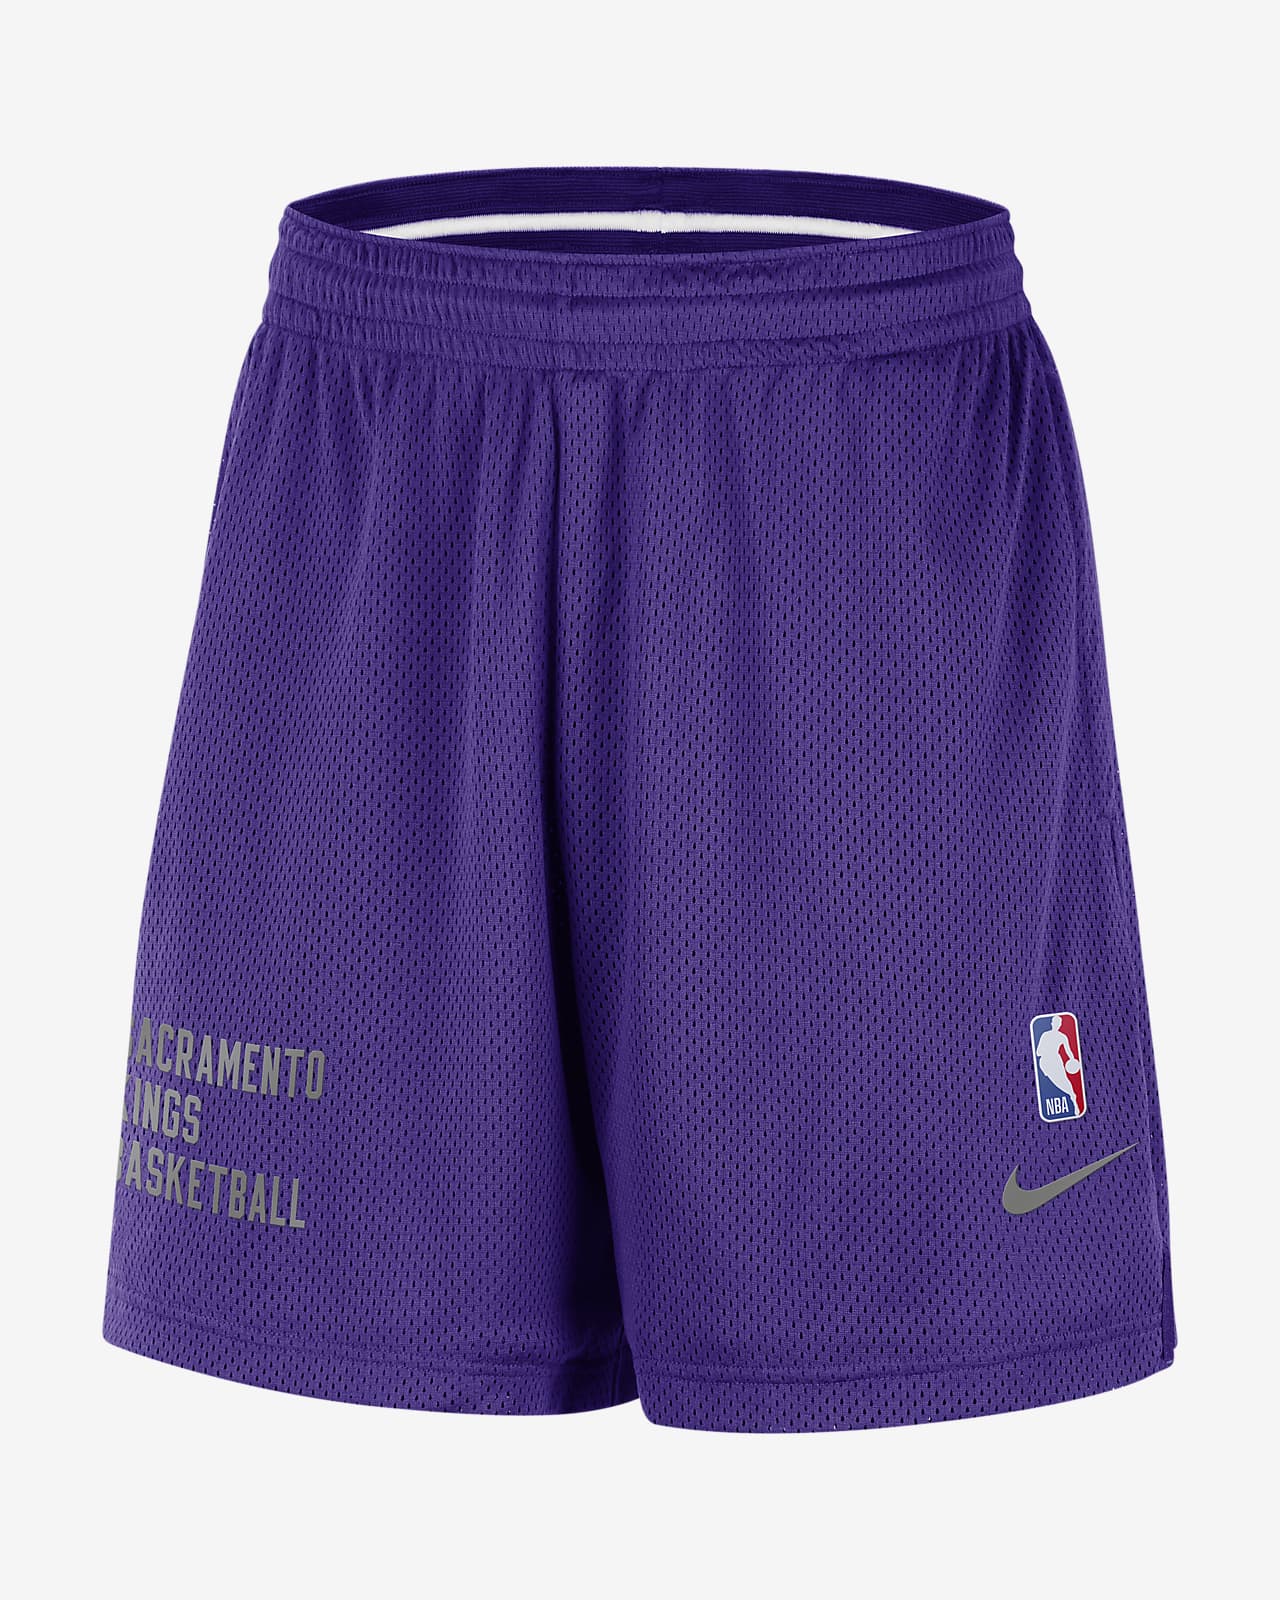 Shorts de malla Nike NBA para hombre Sacramento Kings